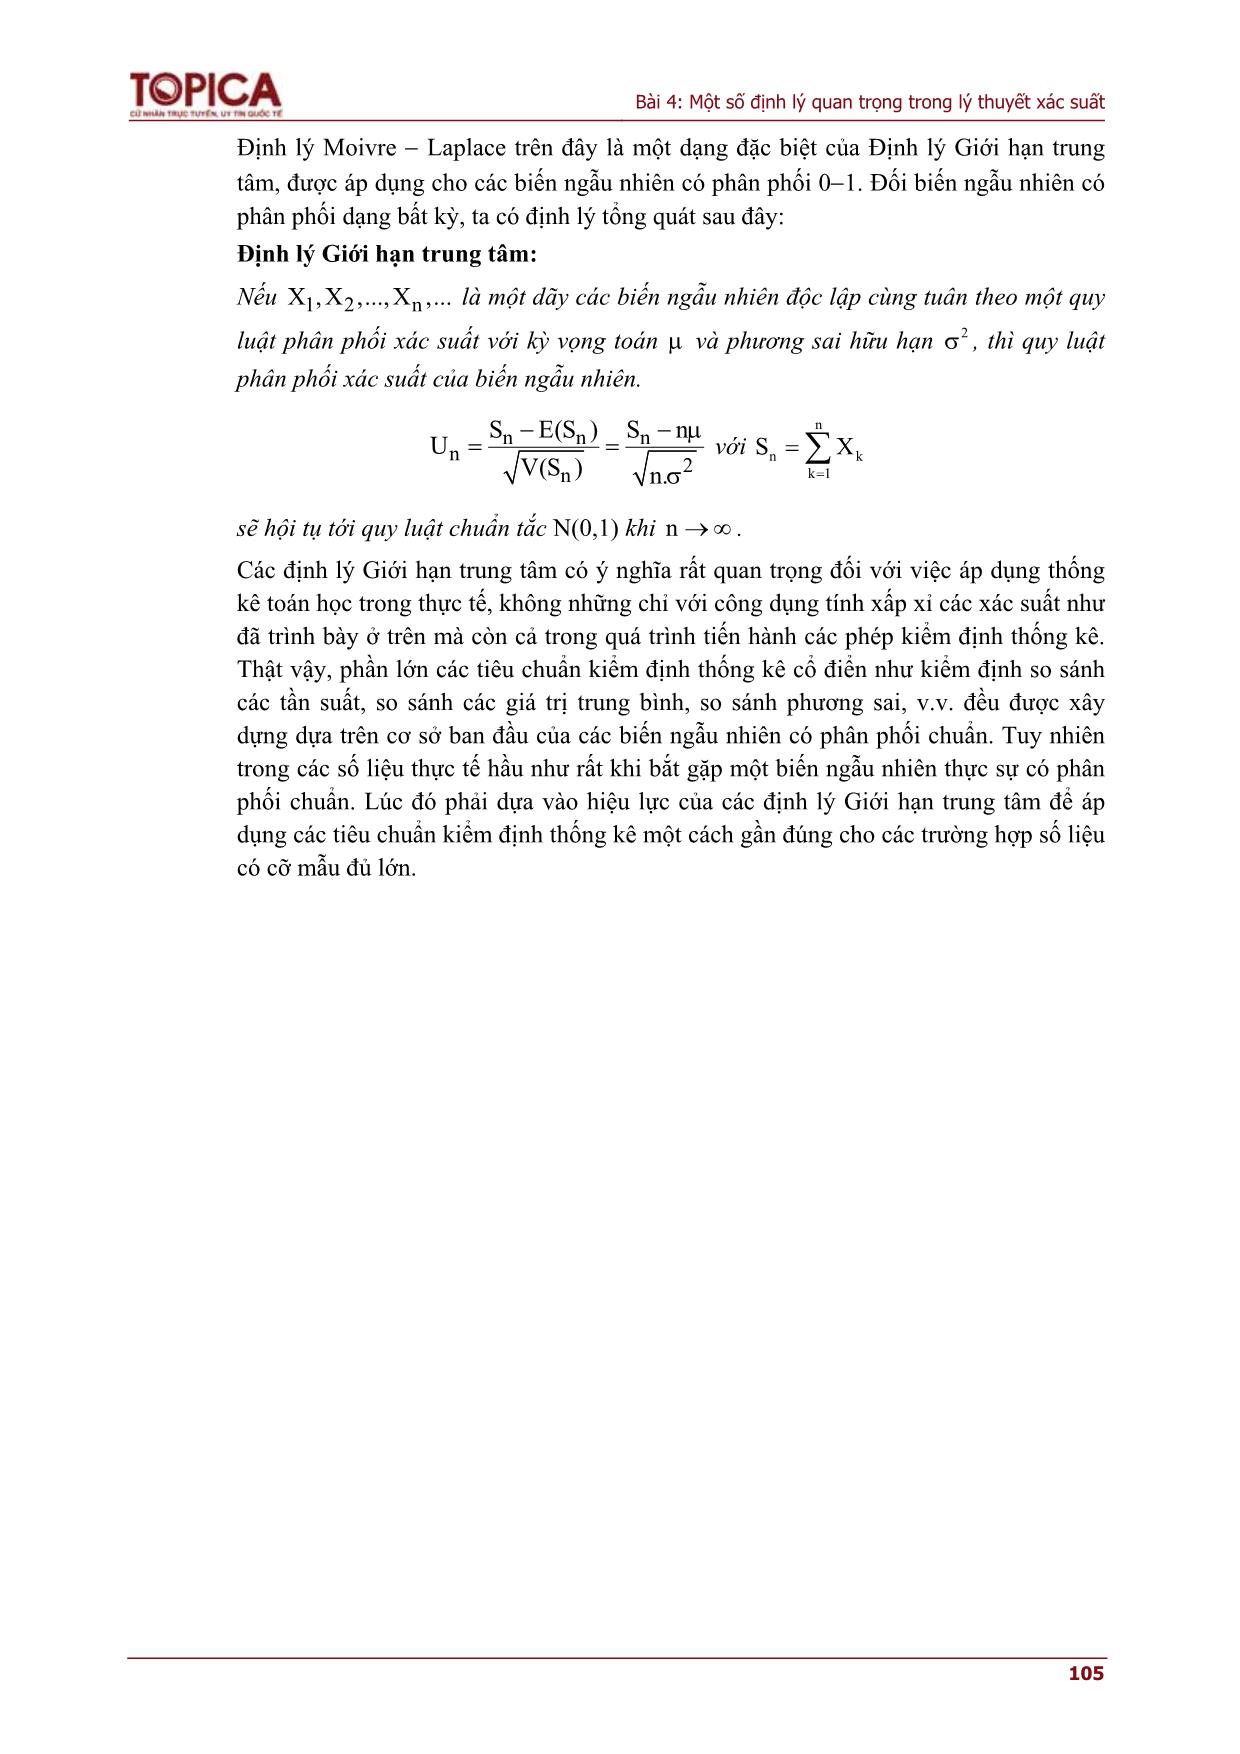 Bài giảng Lý thuyết xác suất và thống kê - Bài 4: Một số định lý quan trọng trong lý thuyết xác suất trang 5